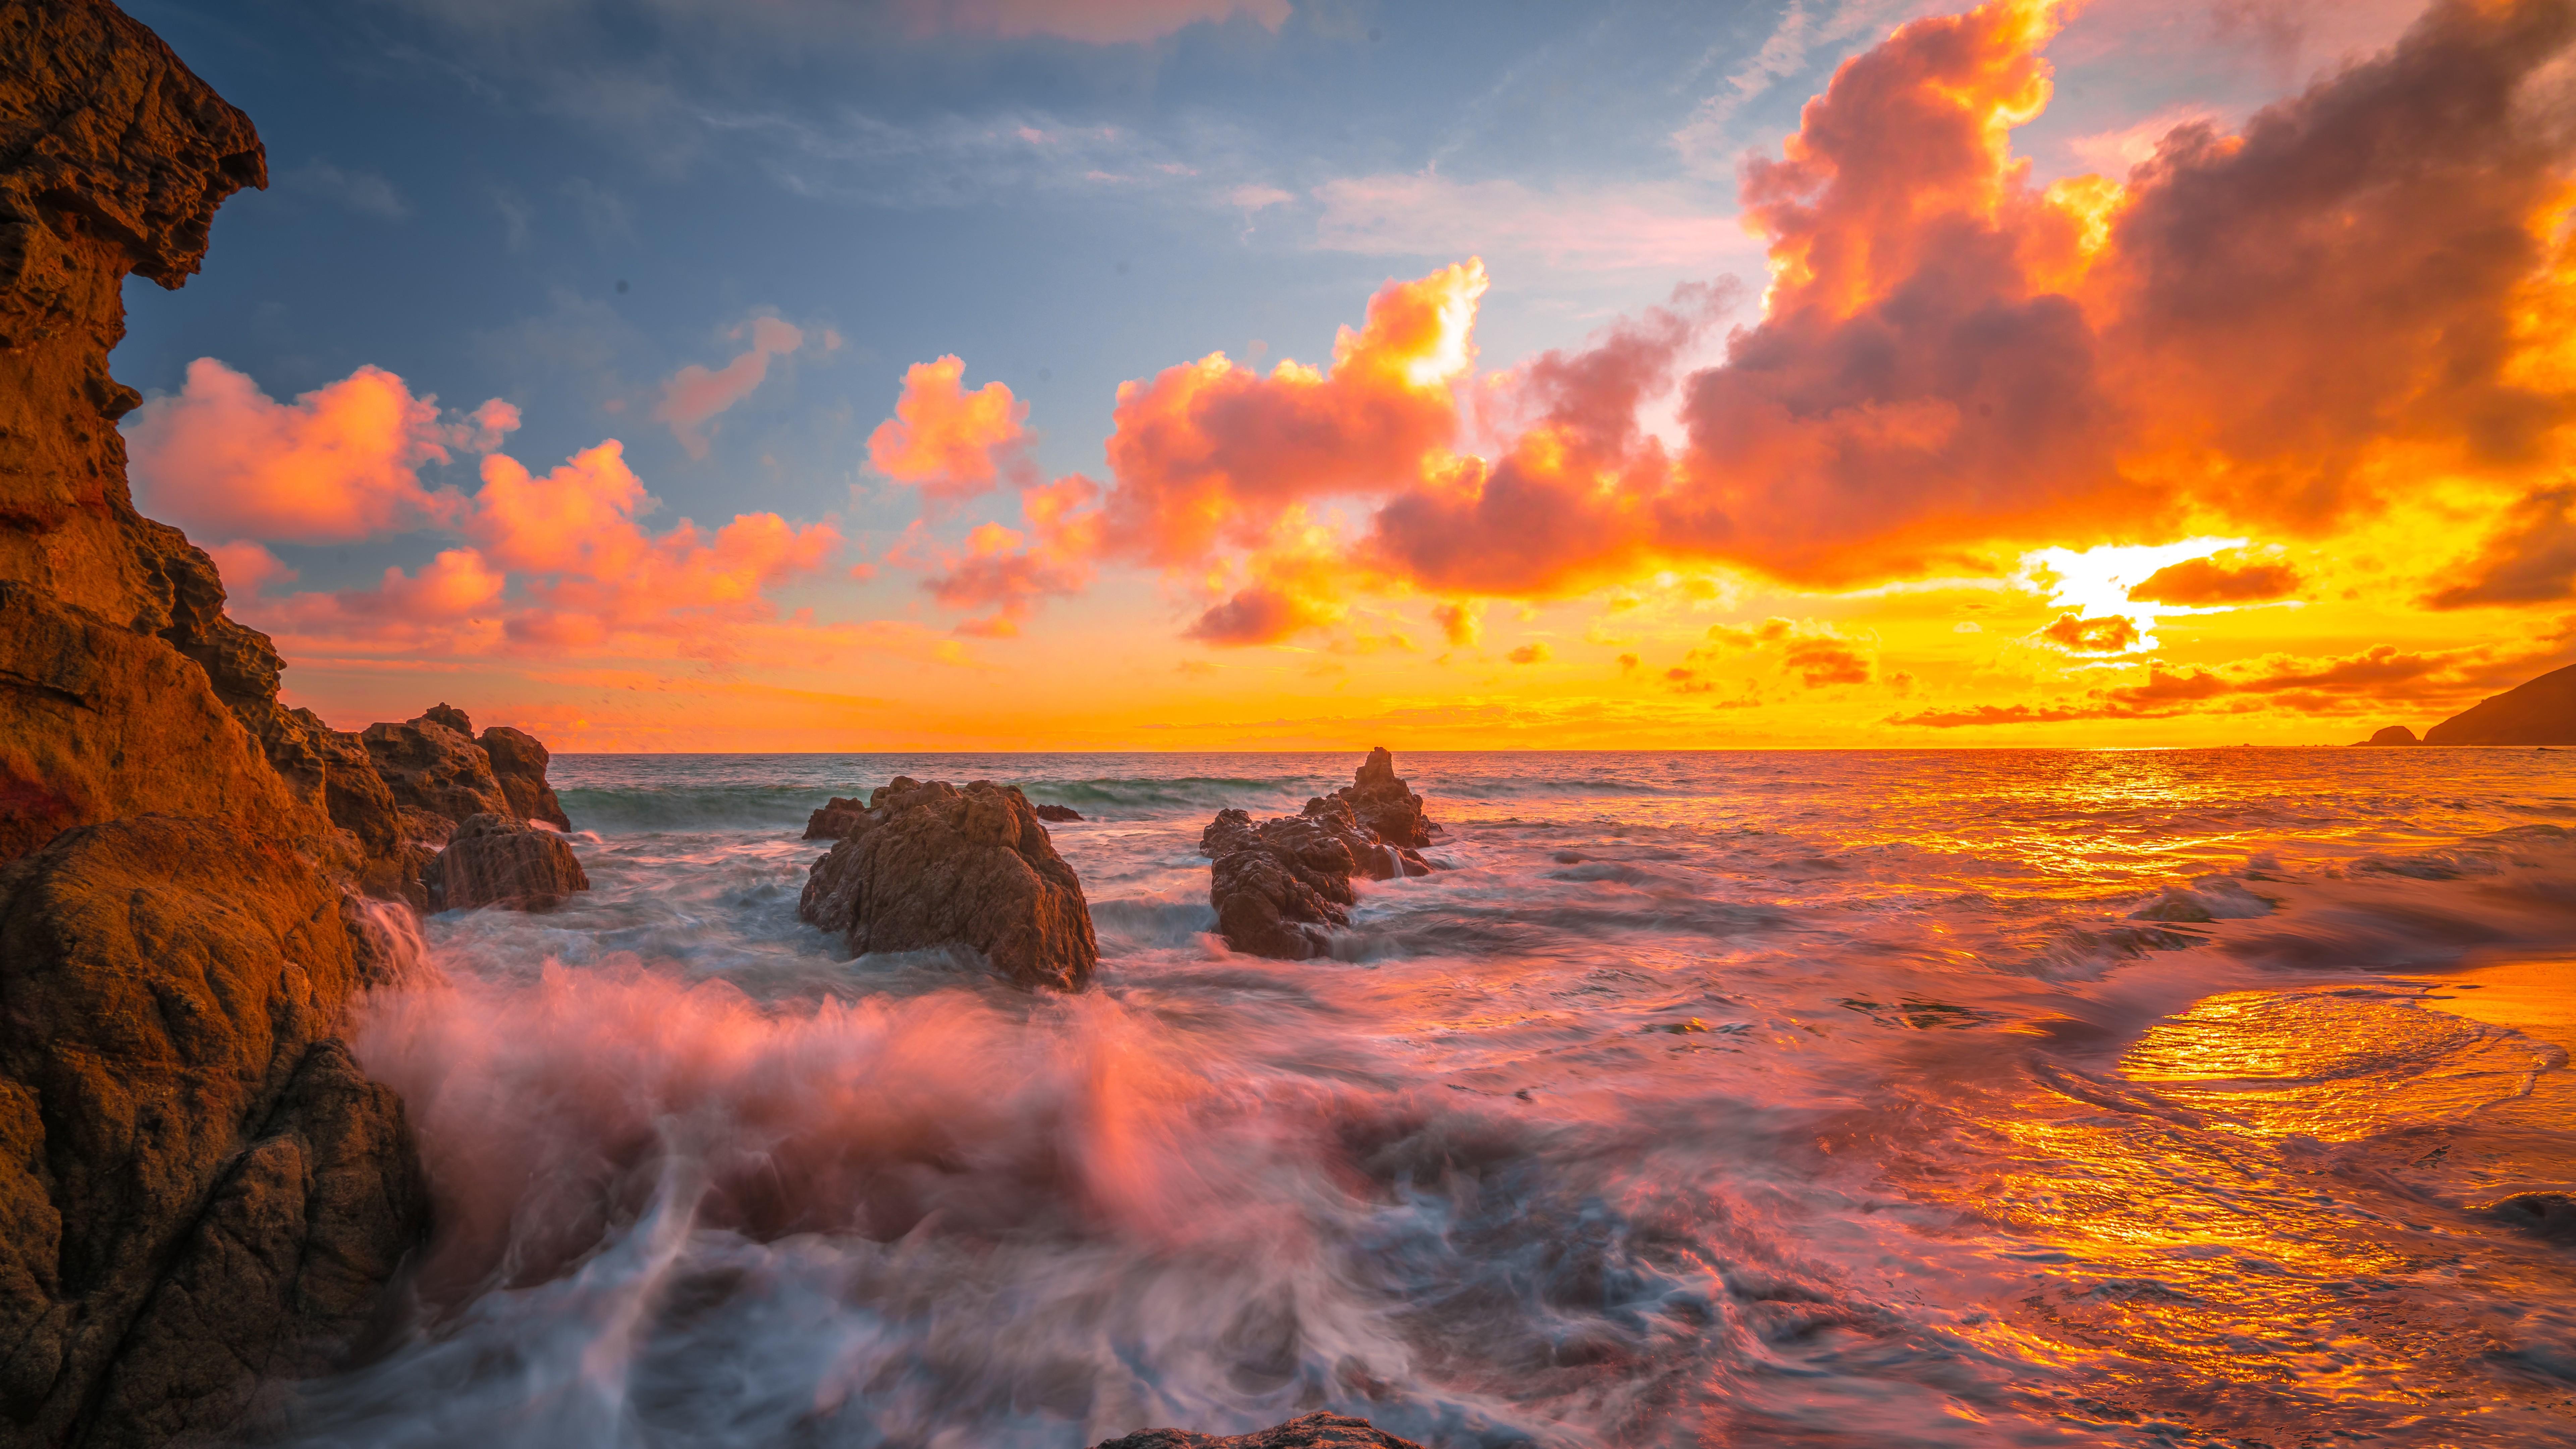 Ocean Sunset 8k 8k HD 4k Wallpaper, Image, Background